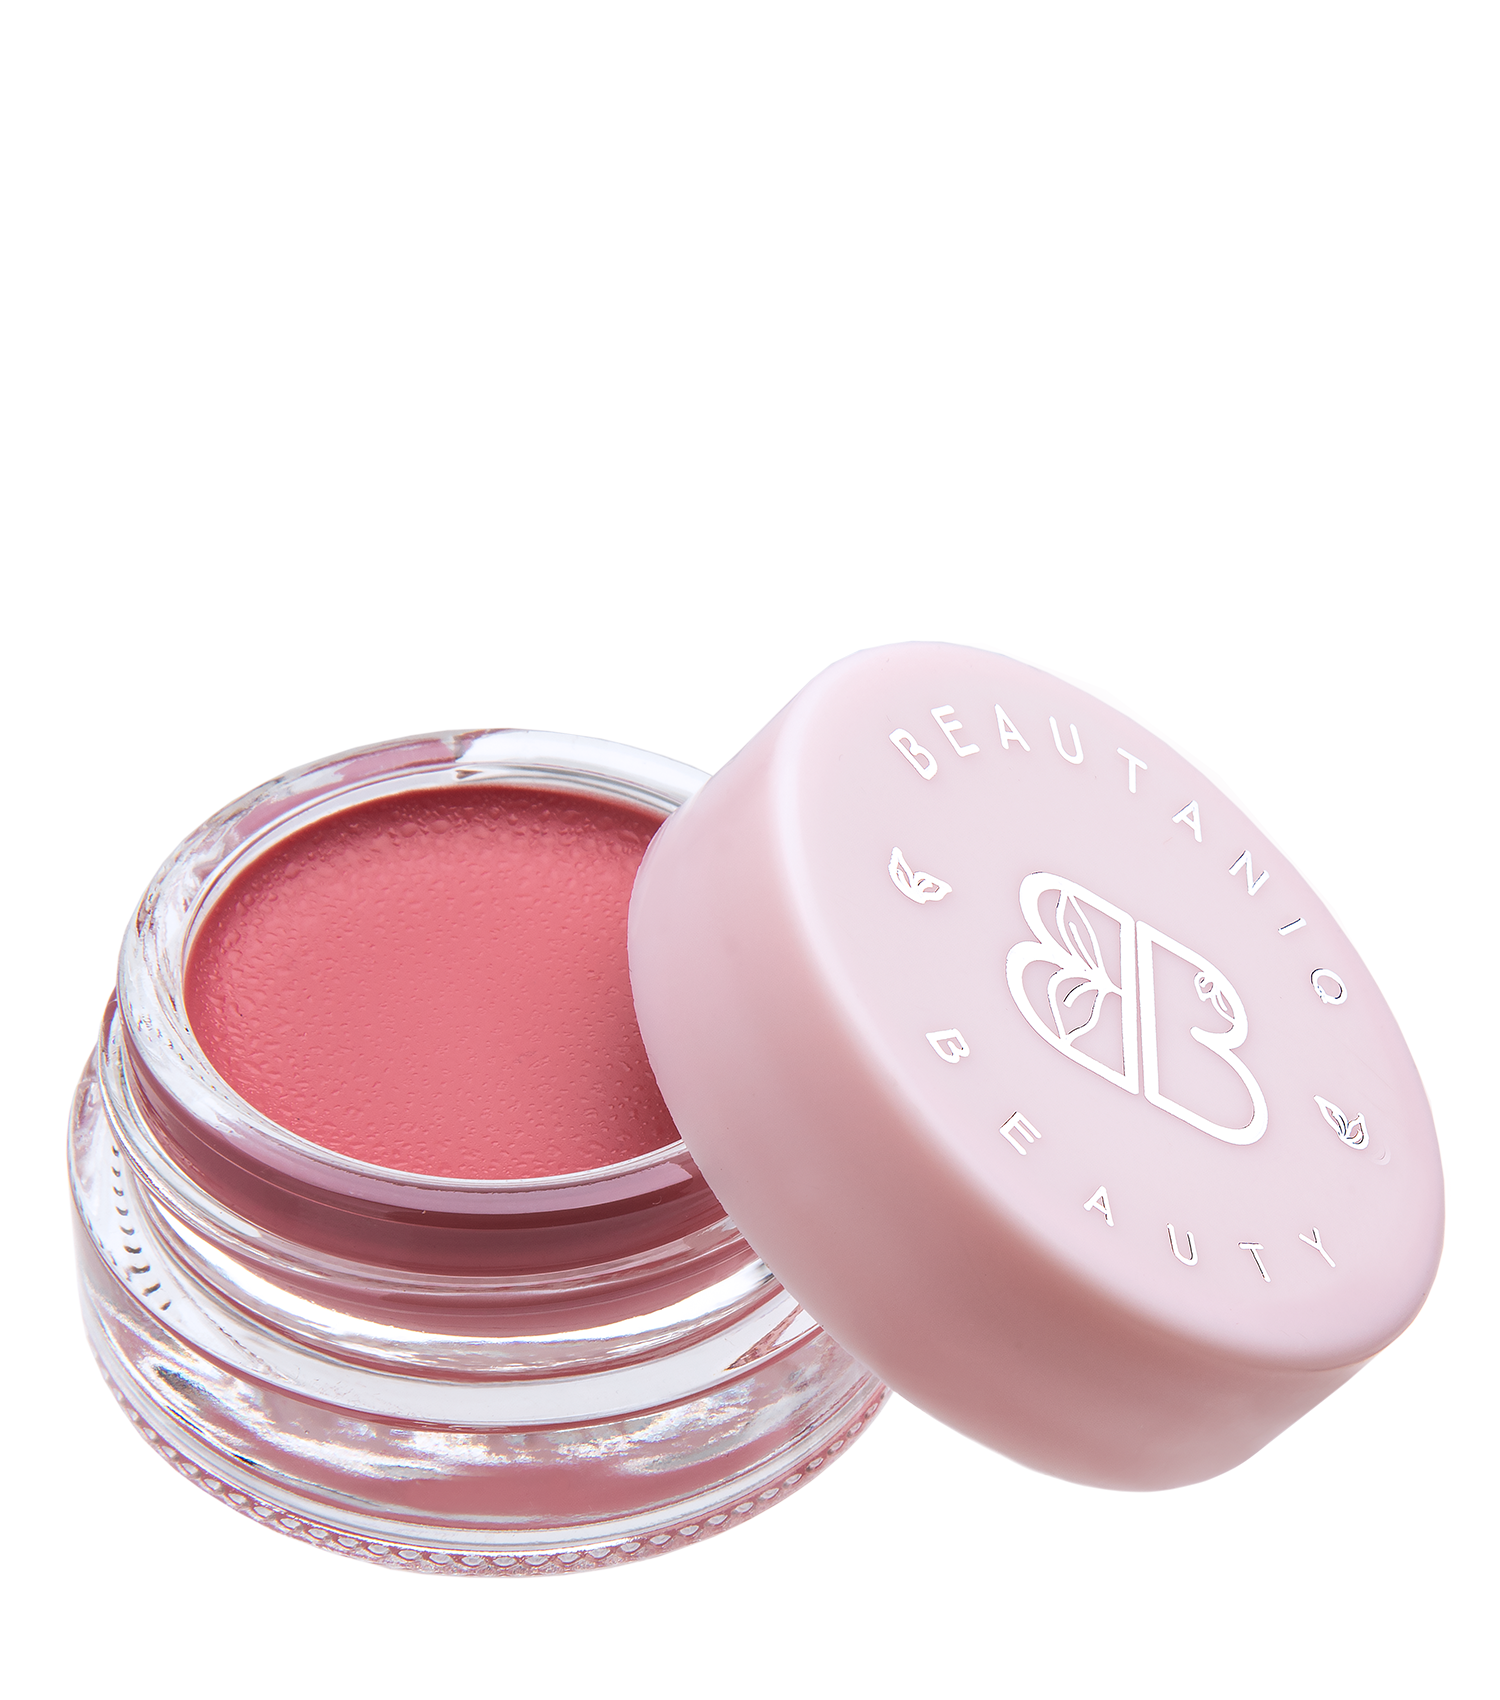 Beautaniq Beauty Butter Lip & Cheek Balm Butter Lip & Cheek Balm- Mauve Lychee - Full Size 1